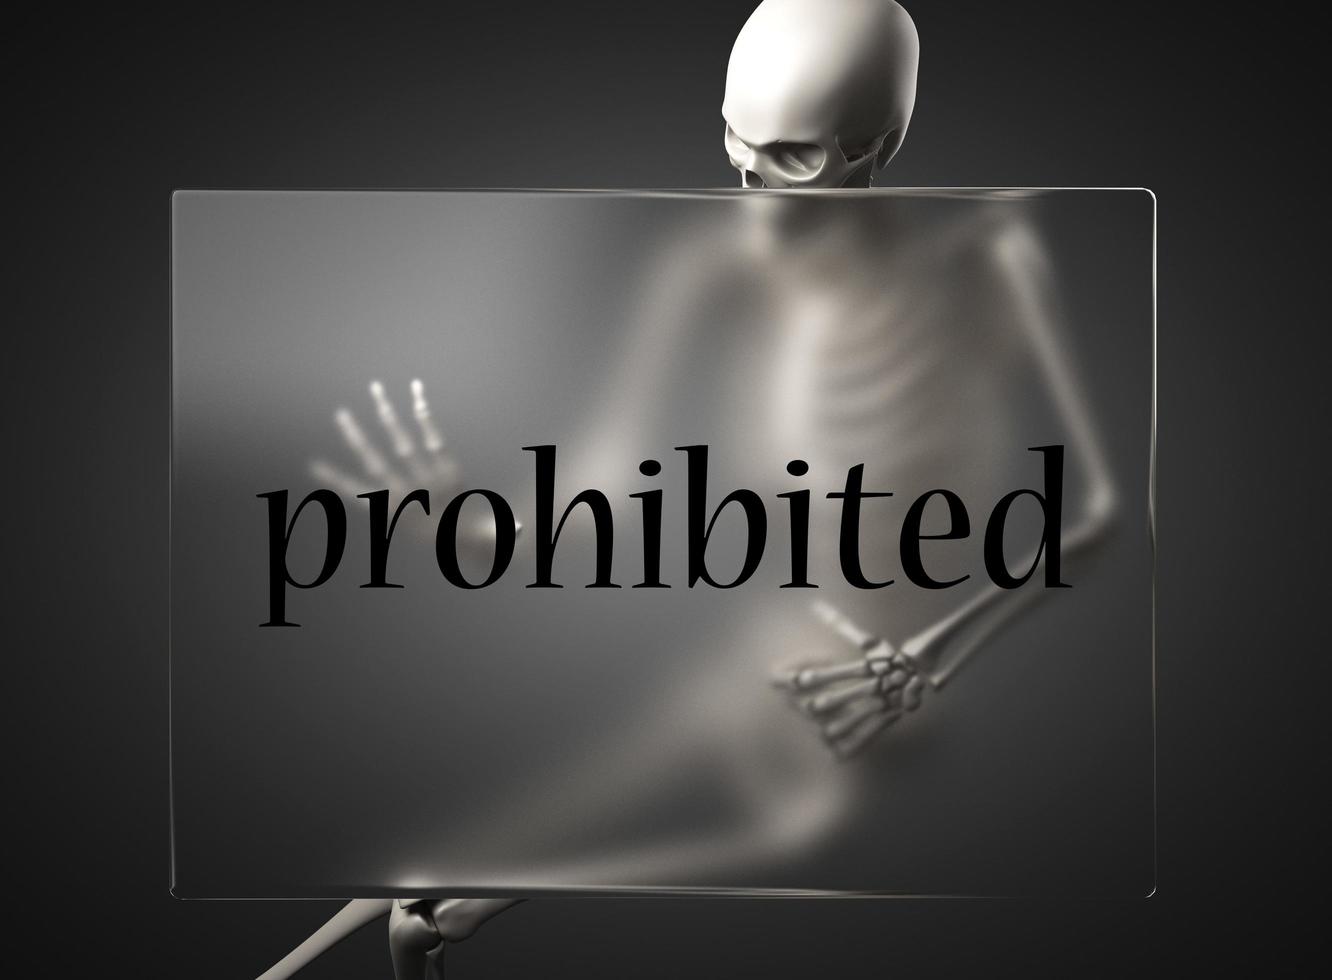 palabra prohibida en vidrio y esqueleto foto